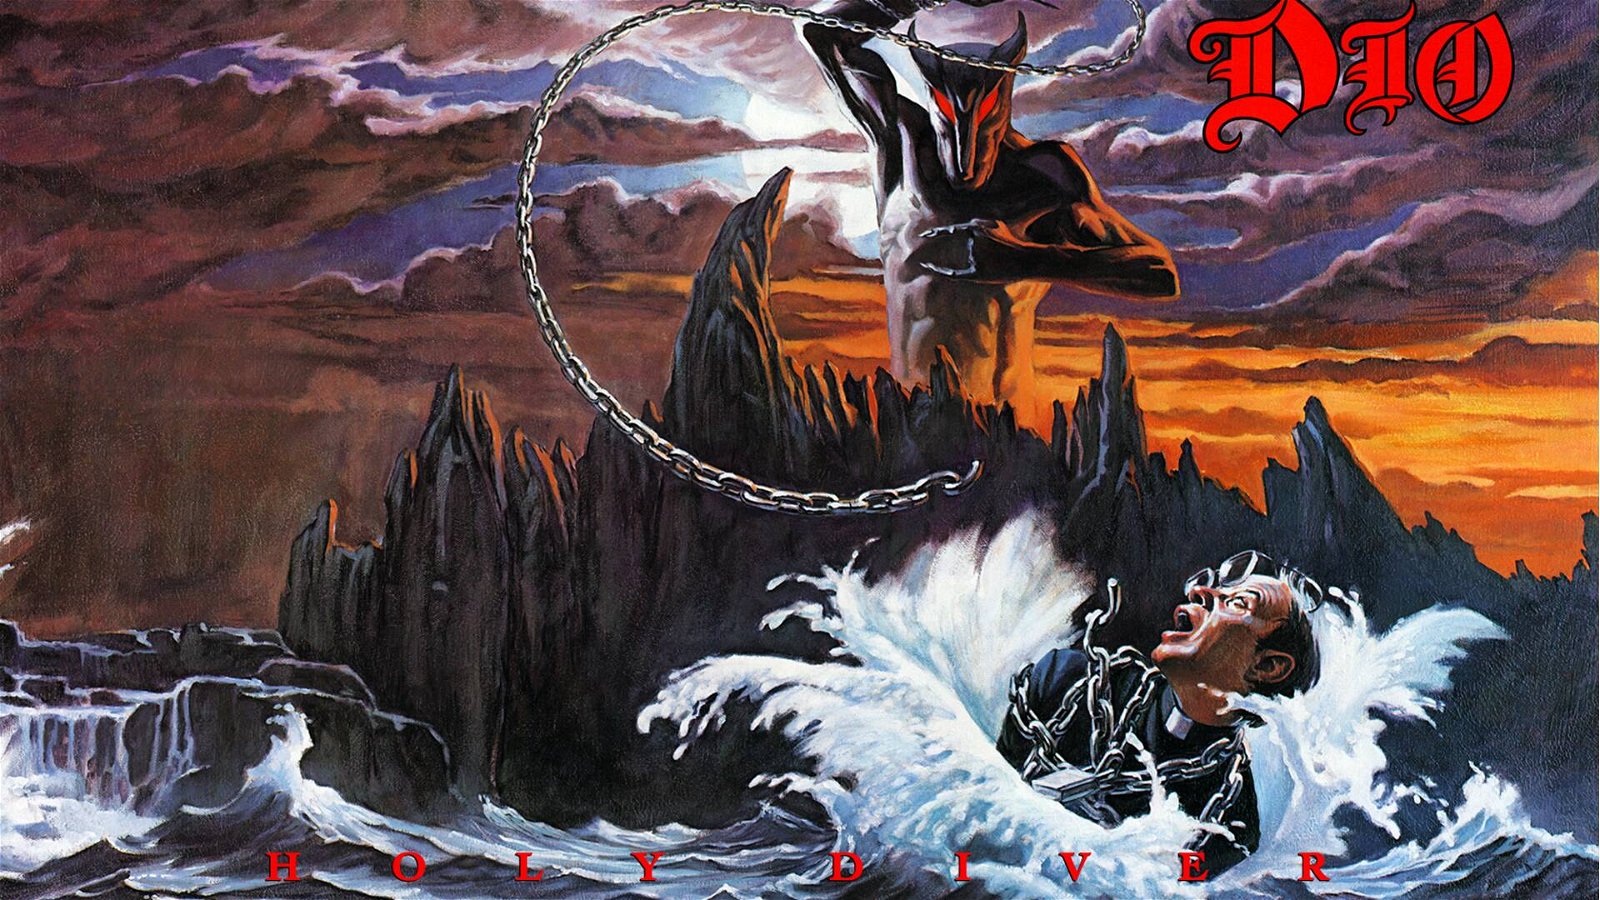 Immagine di Dio - Holy Diver: il graphic novel ispirato all'album heavy metal dei Dio